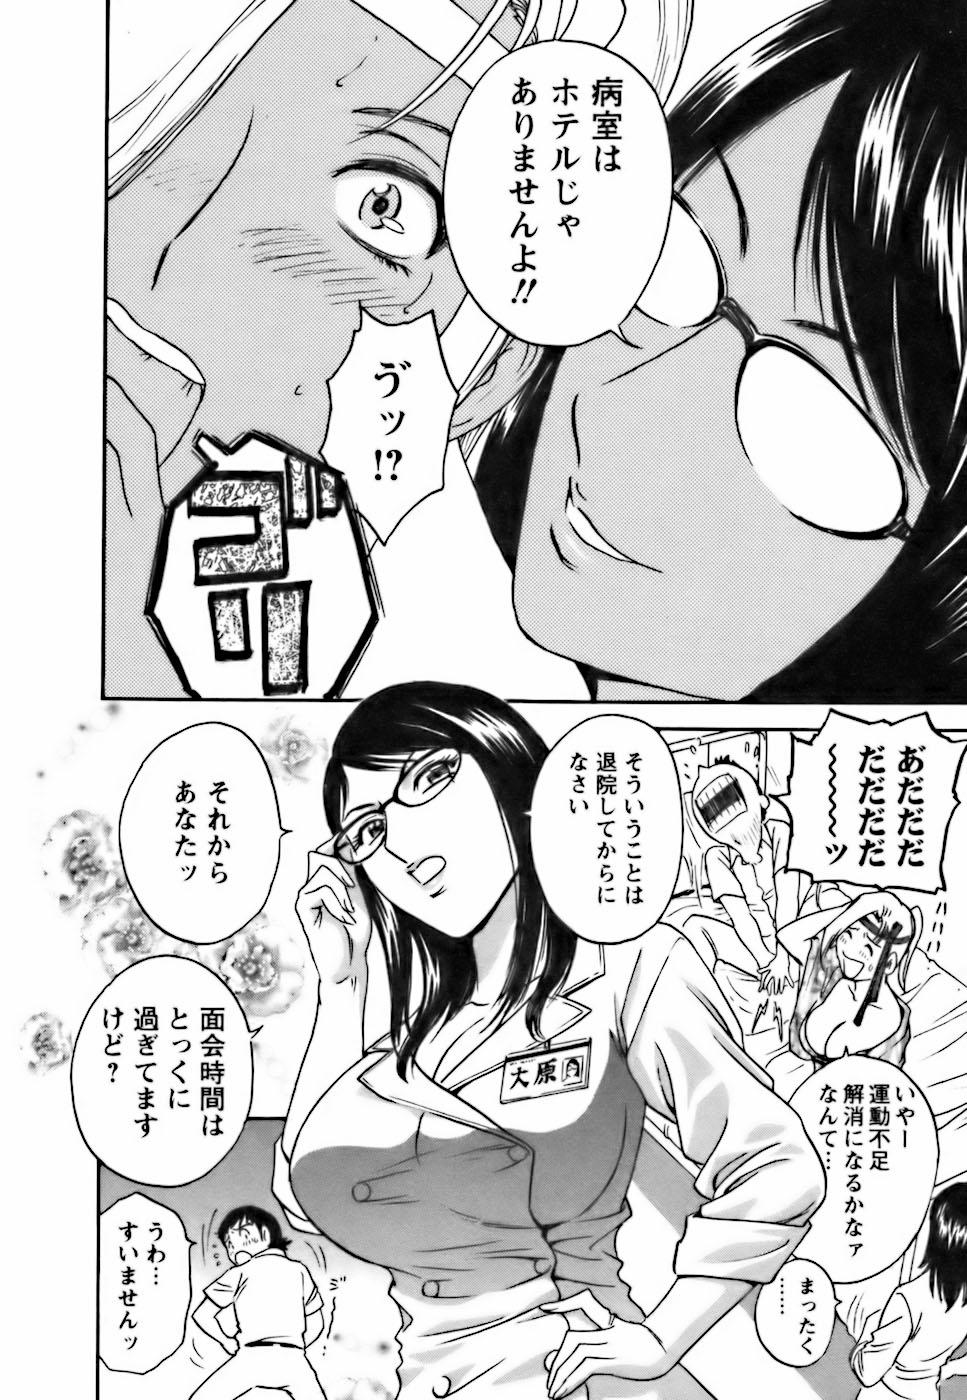 [Hidemaru] Mo-Retsu! Boin Sensei (Boing Boing Teacher) Vol.3 75